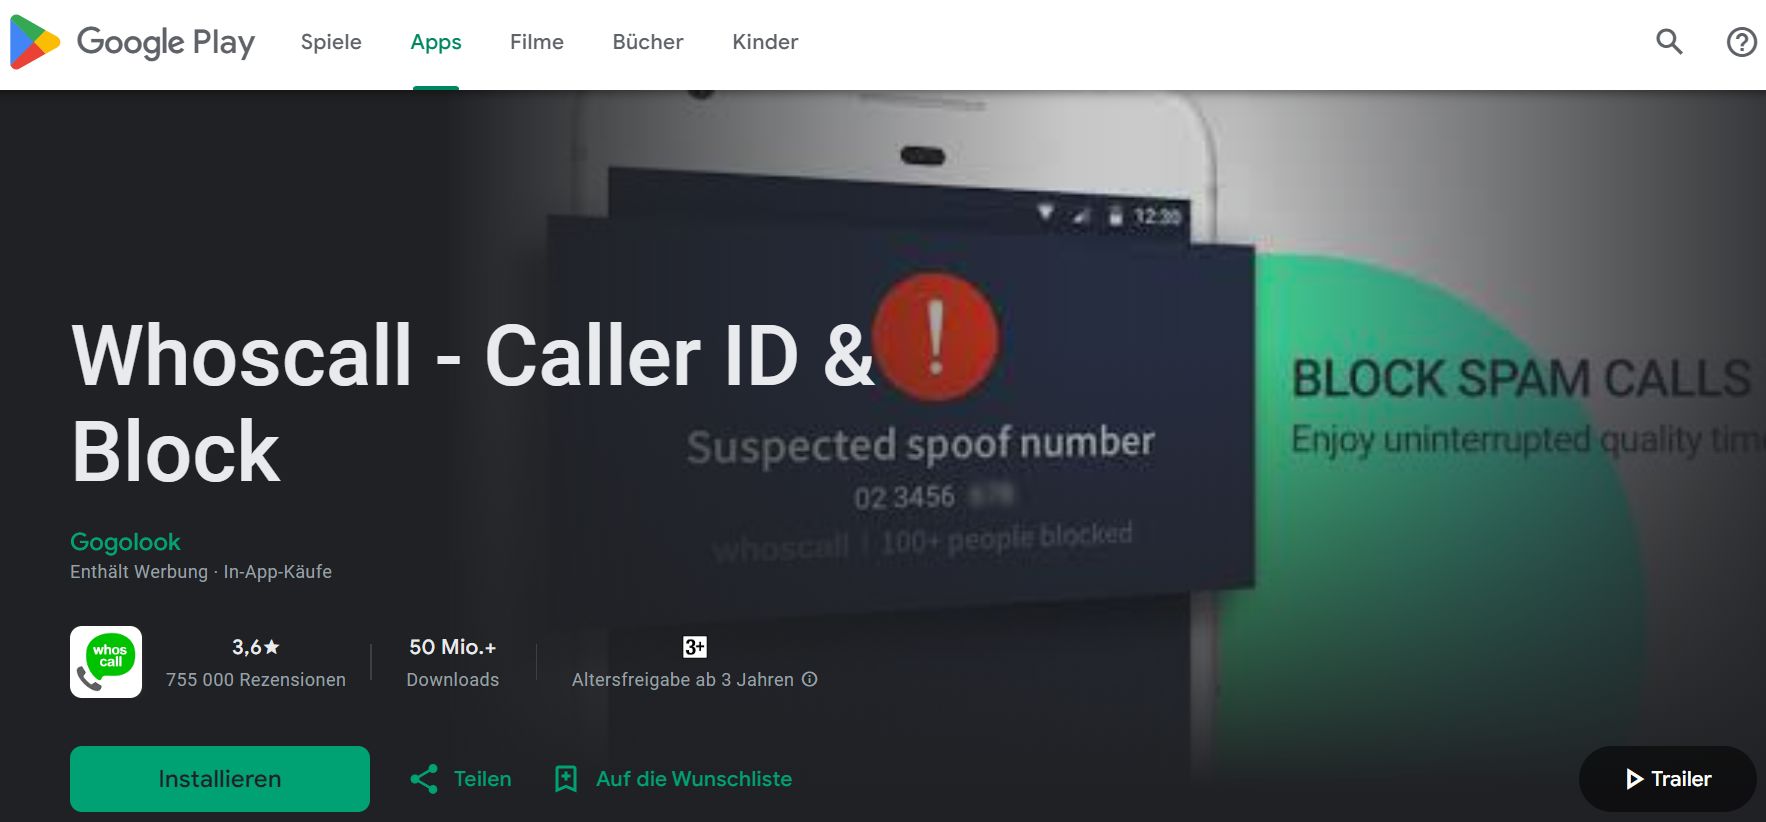 Ansicht der Whoscall - Caller ID & Block App im Playmarket mit App-Info und Installationsbutton